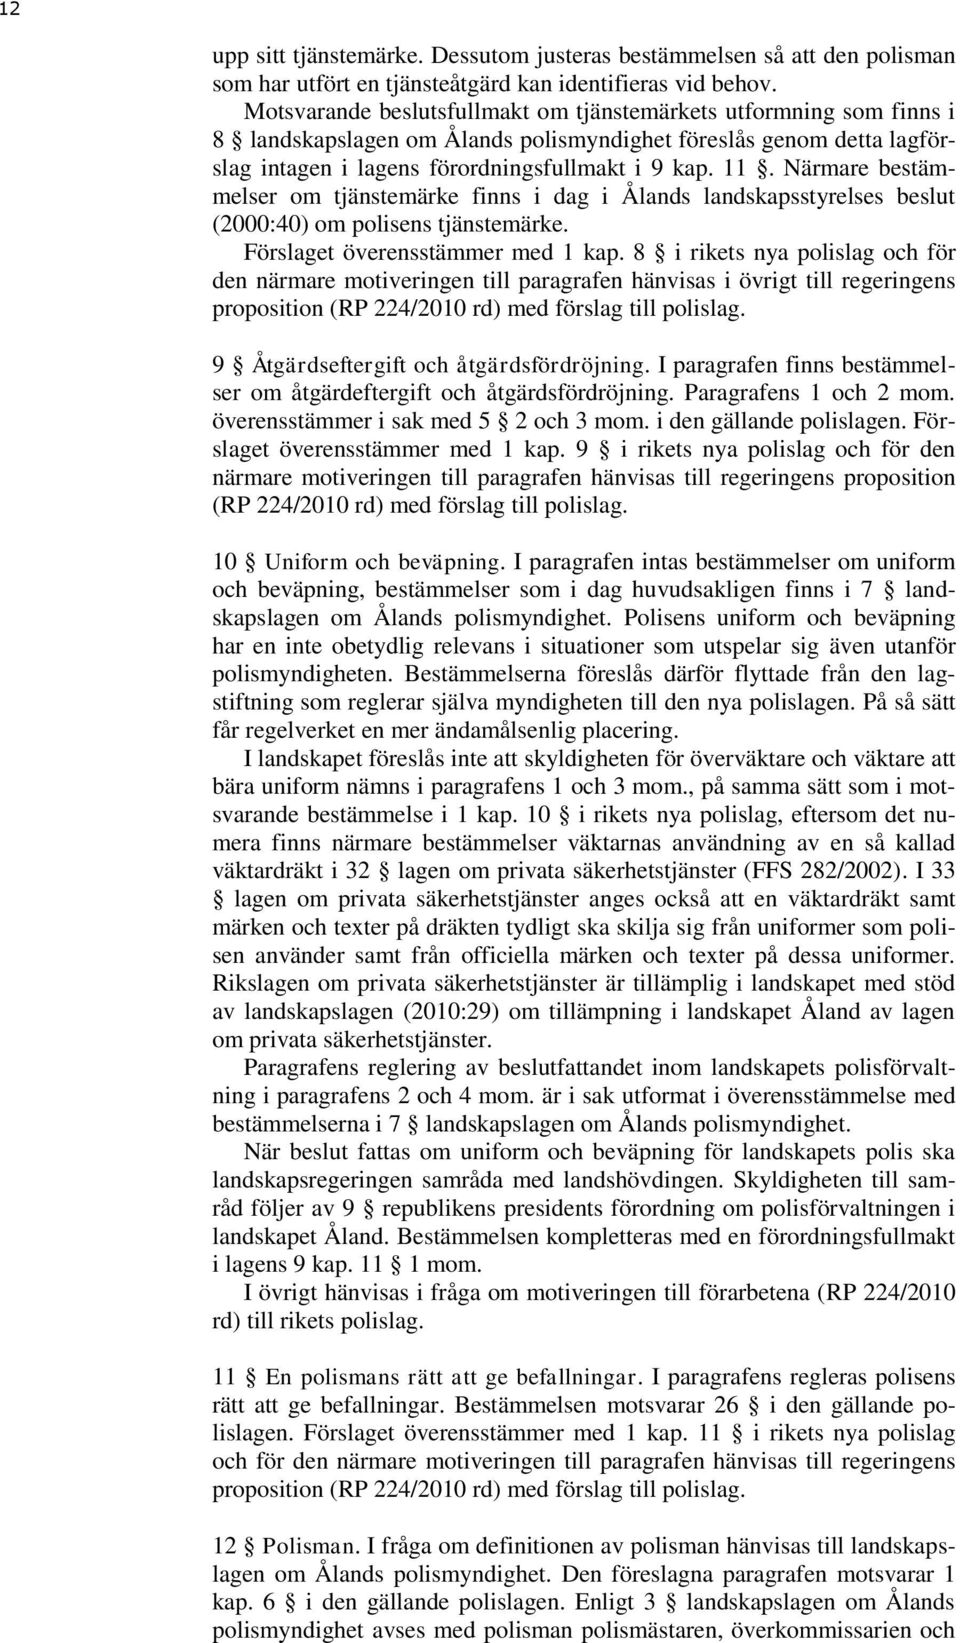 Närmare bestämmelser om tjänstemärke finns i dag i Ålands landskapsstyrelses beslut (2000:40) om polisens tjänstemärke. Förslaget överensstämmer med 1 kap.